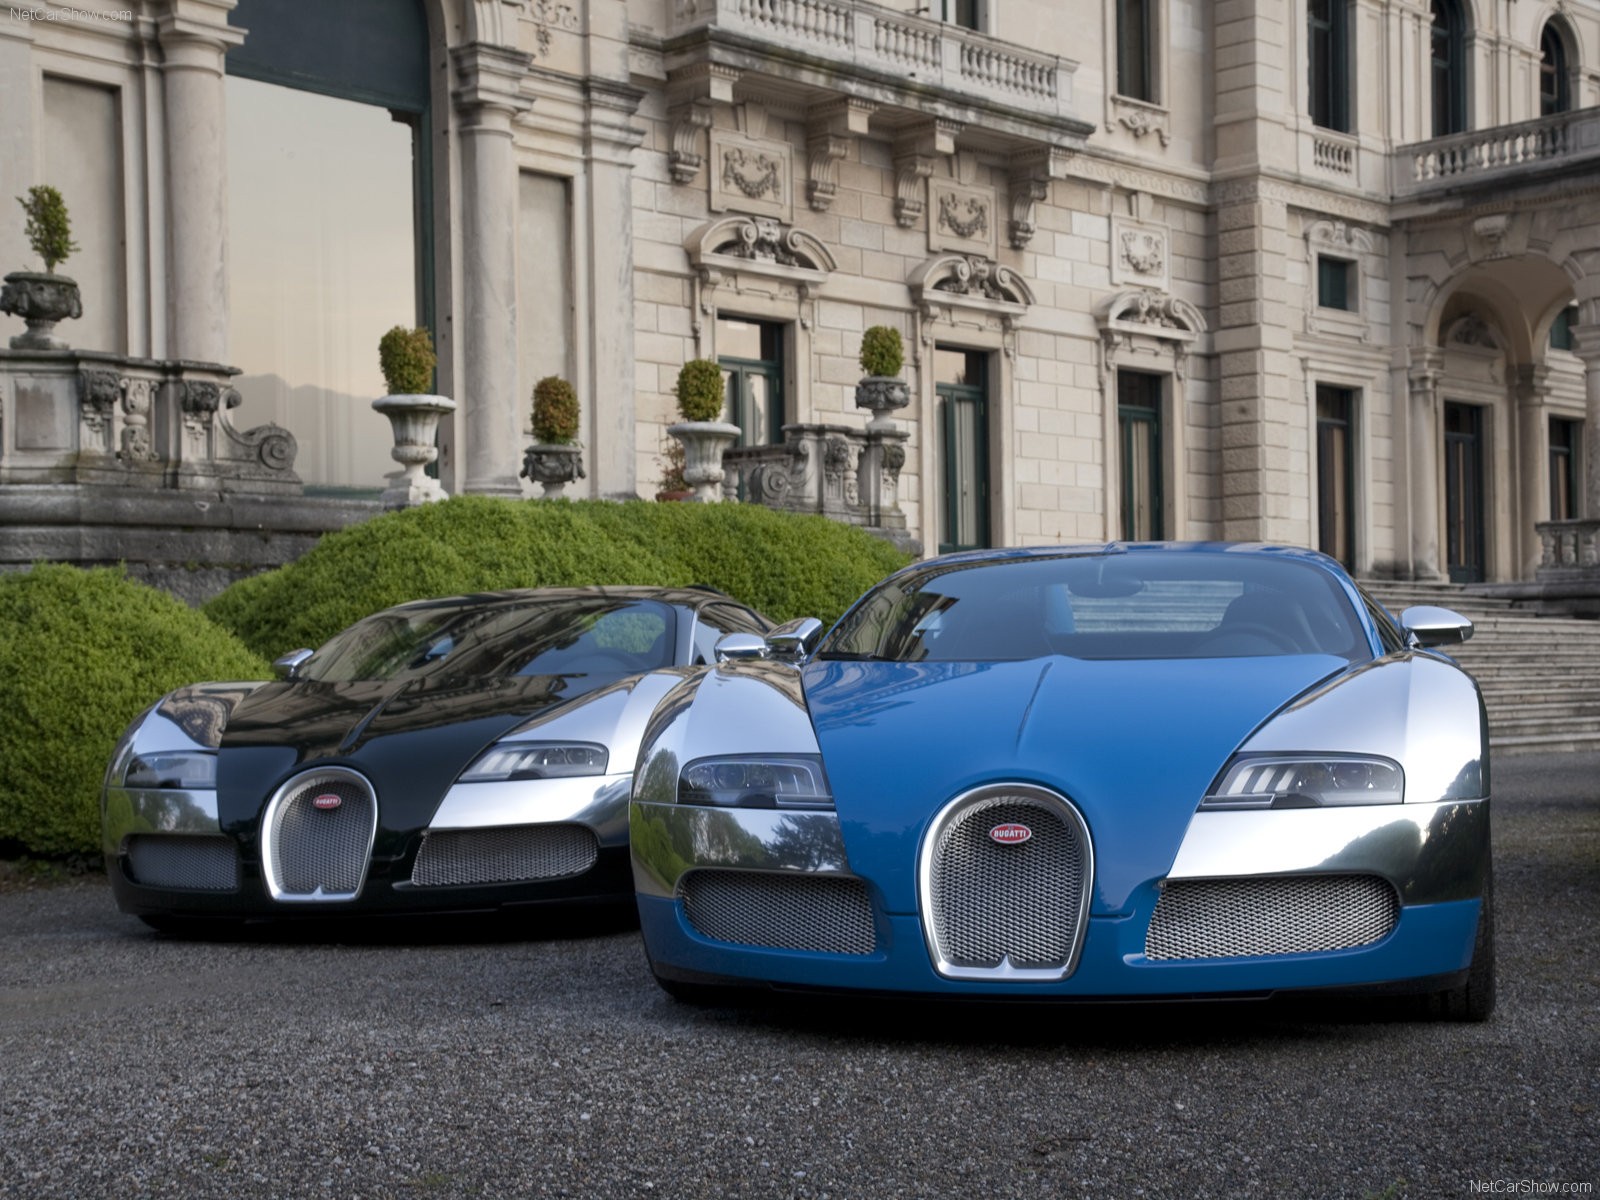 cars, Bugatti, Veyron, Bugatti Wallpaper